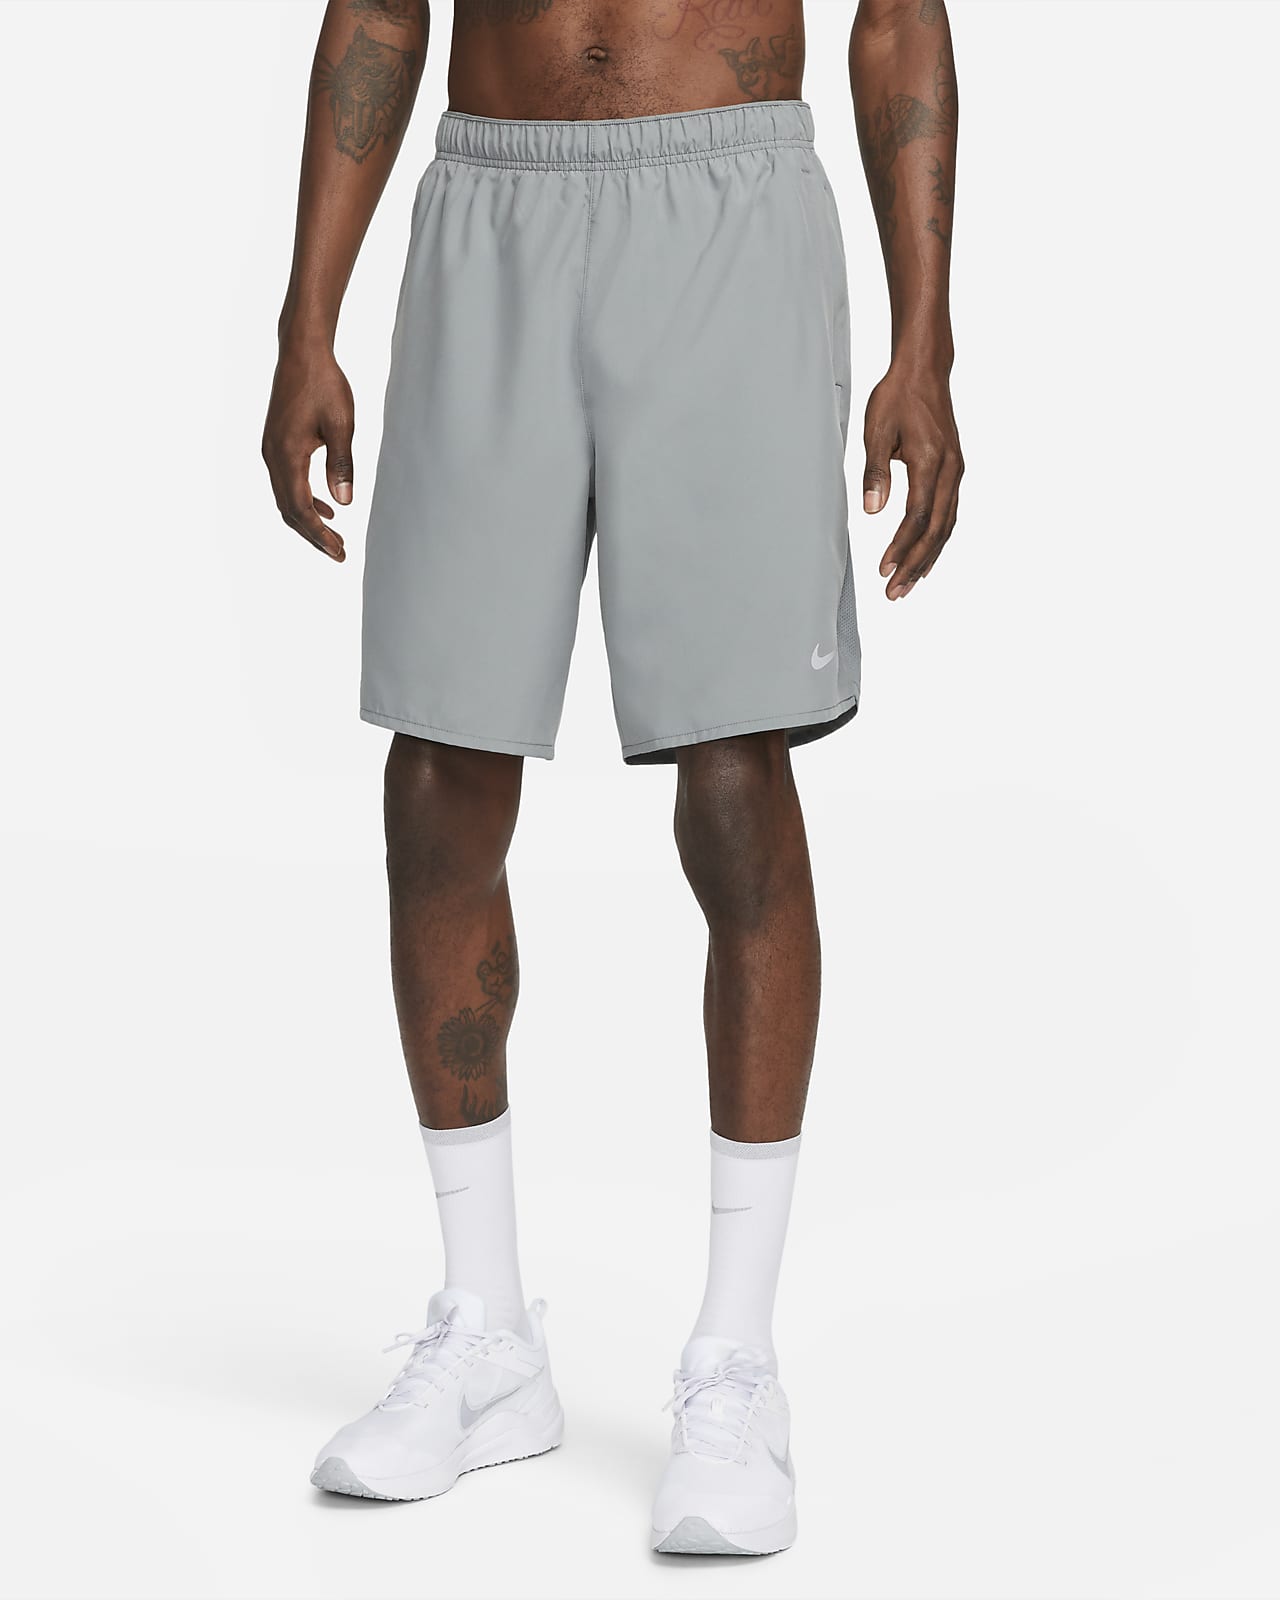 Alsidige Nike Challenger Dri-FIT-shorts (23 cm) uden for til mænd